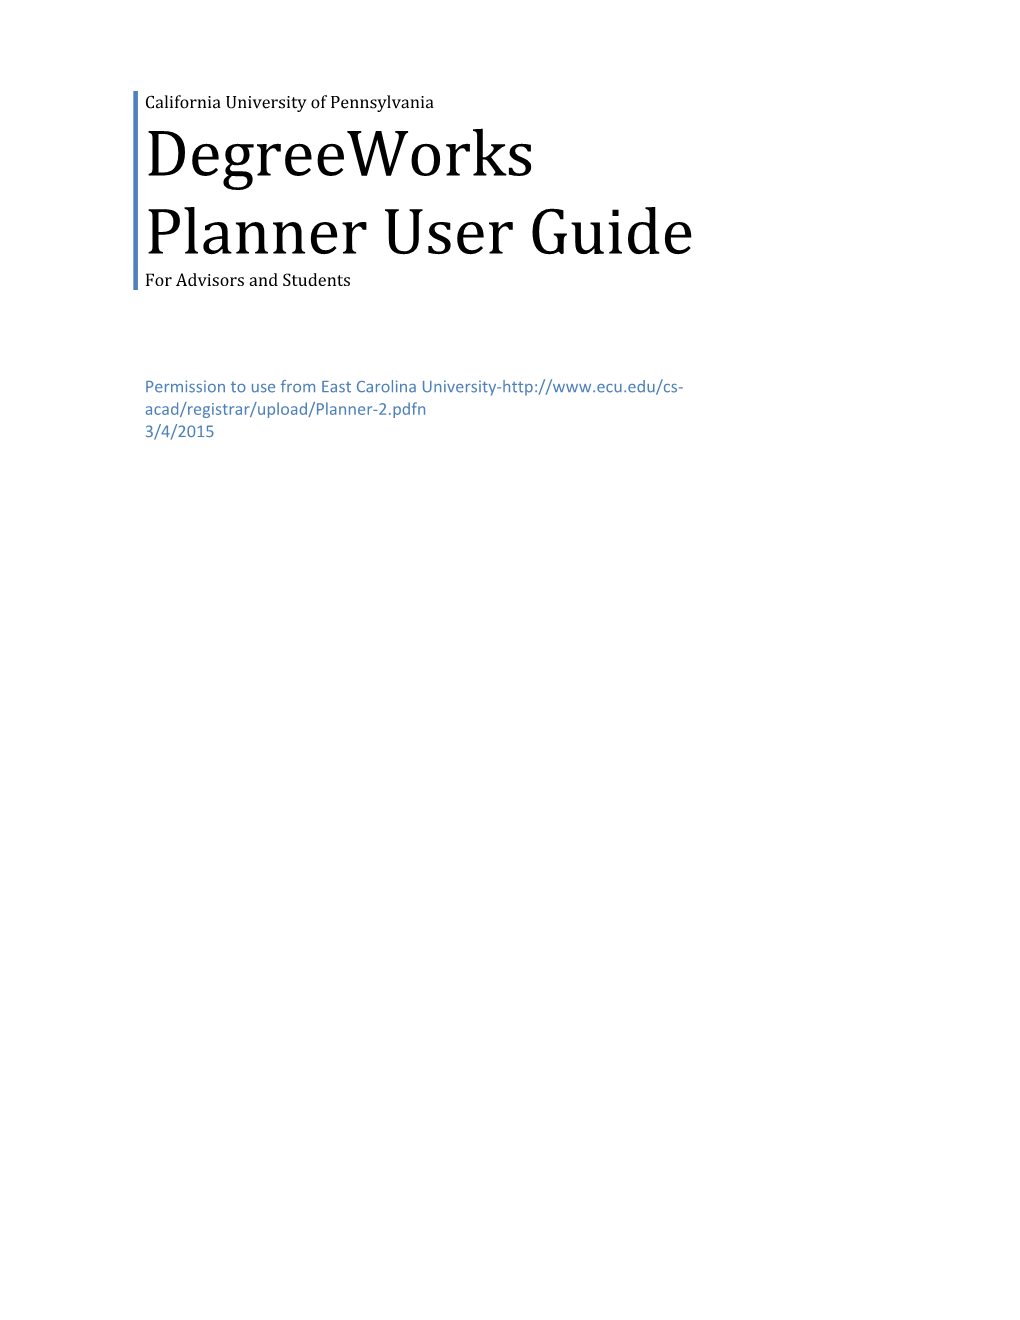 Degreeworks Planner User Guide